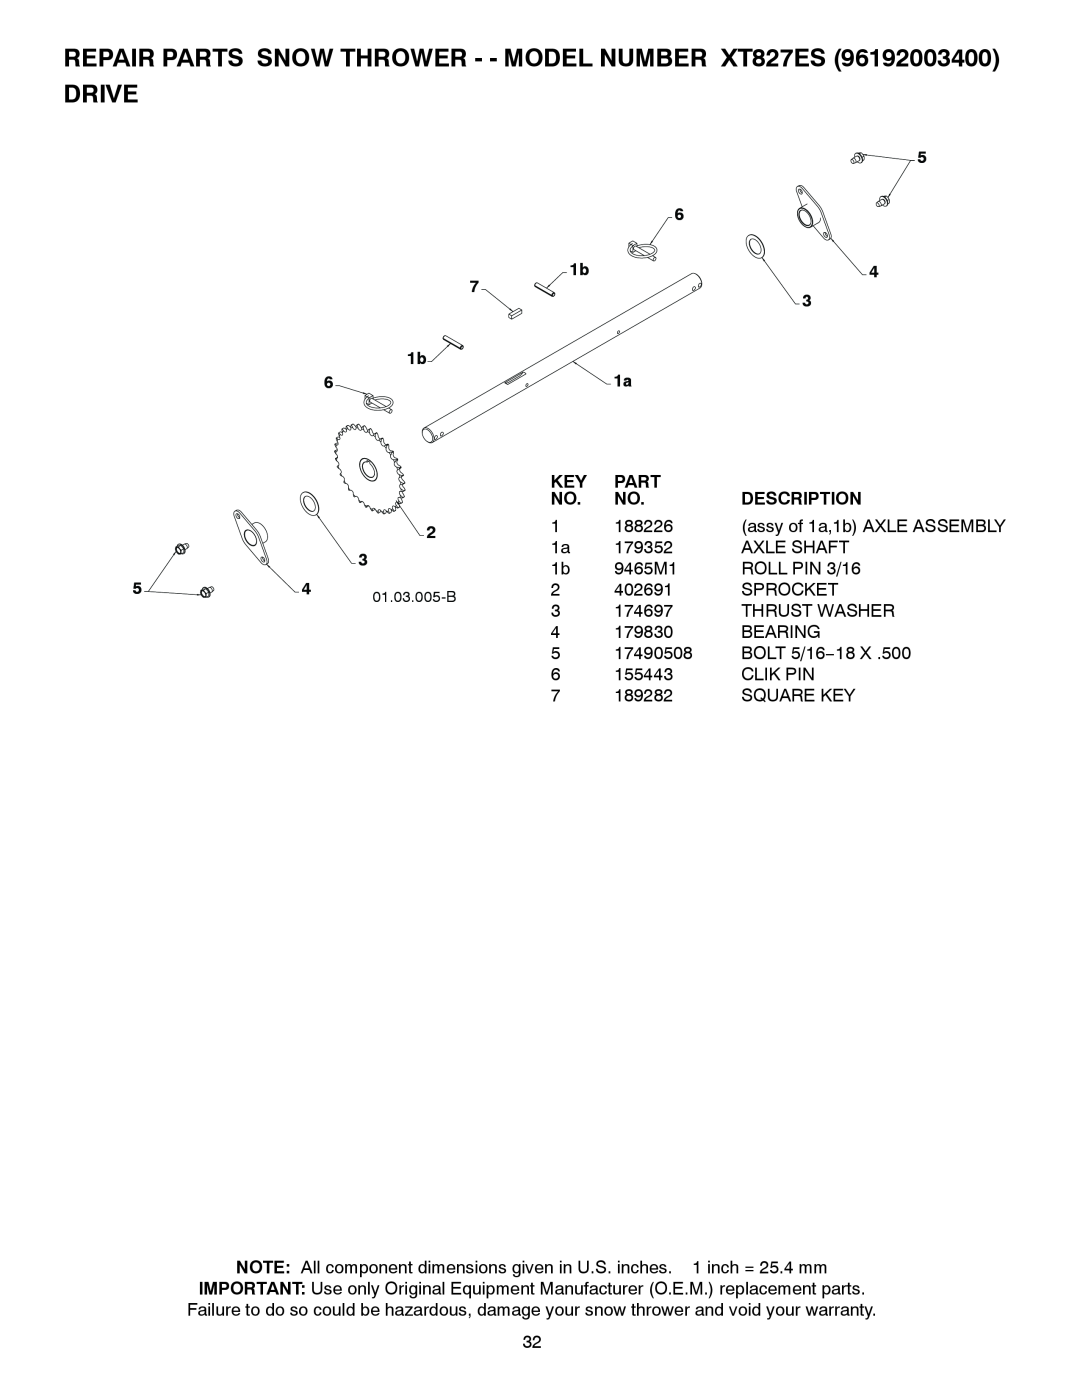 Poulan XT827ES, 428863, 96192003400 owner manual Drive, Part, Description 